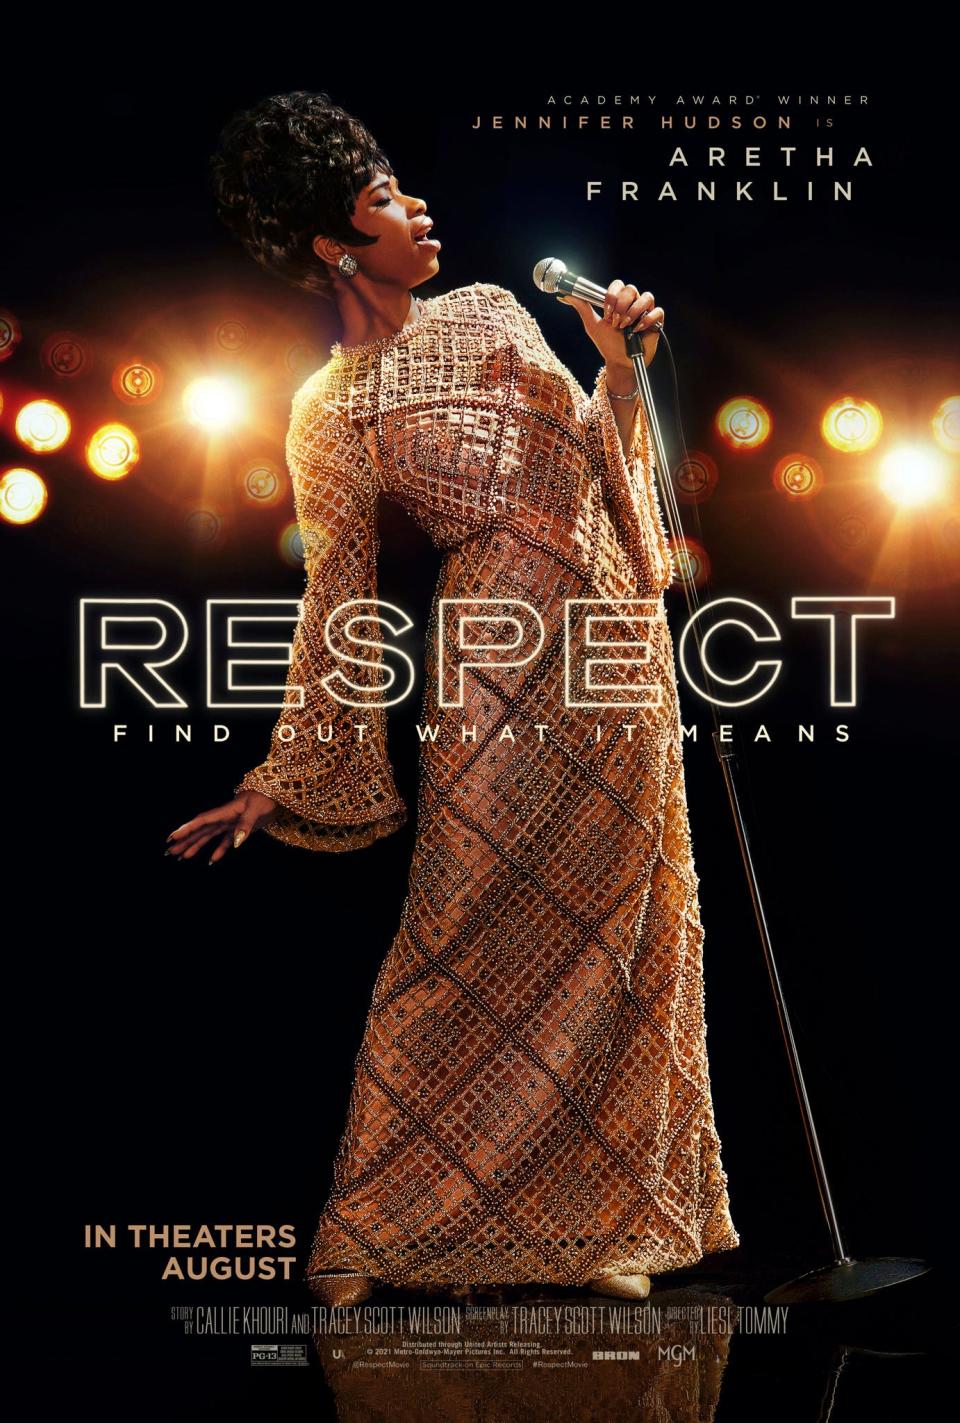 The official poster for "Respect," starring Jennifer Hudson.